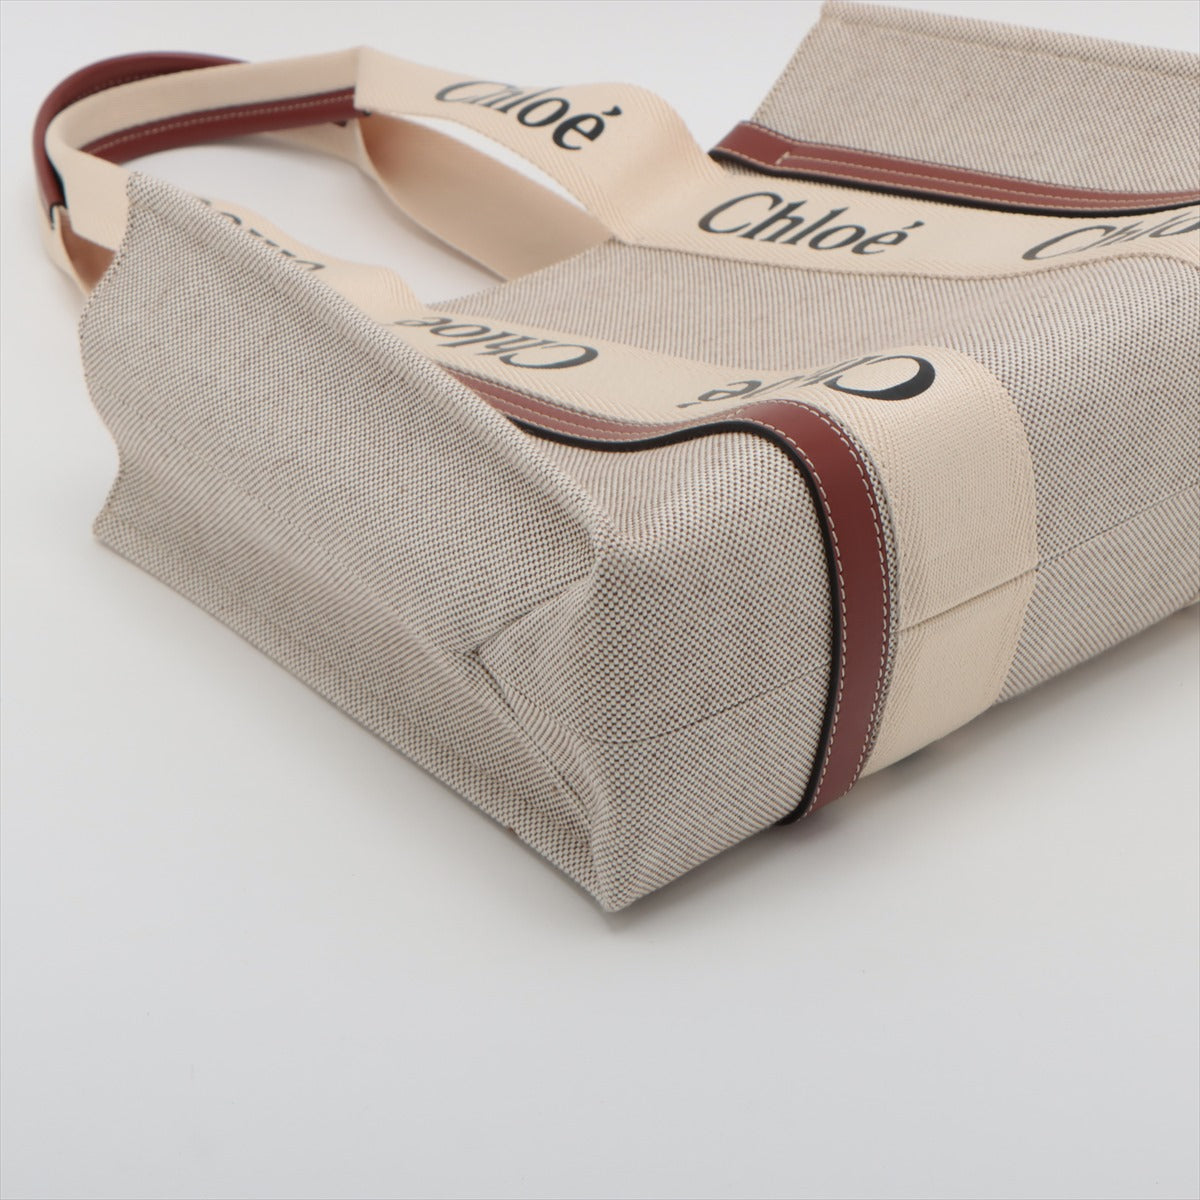 Chloe woody Medium Canvas & leather Tote bag Brown